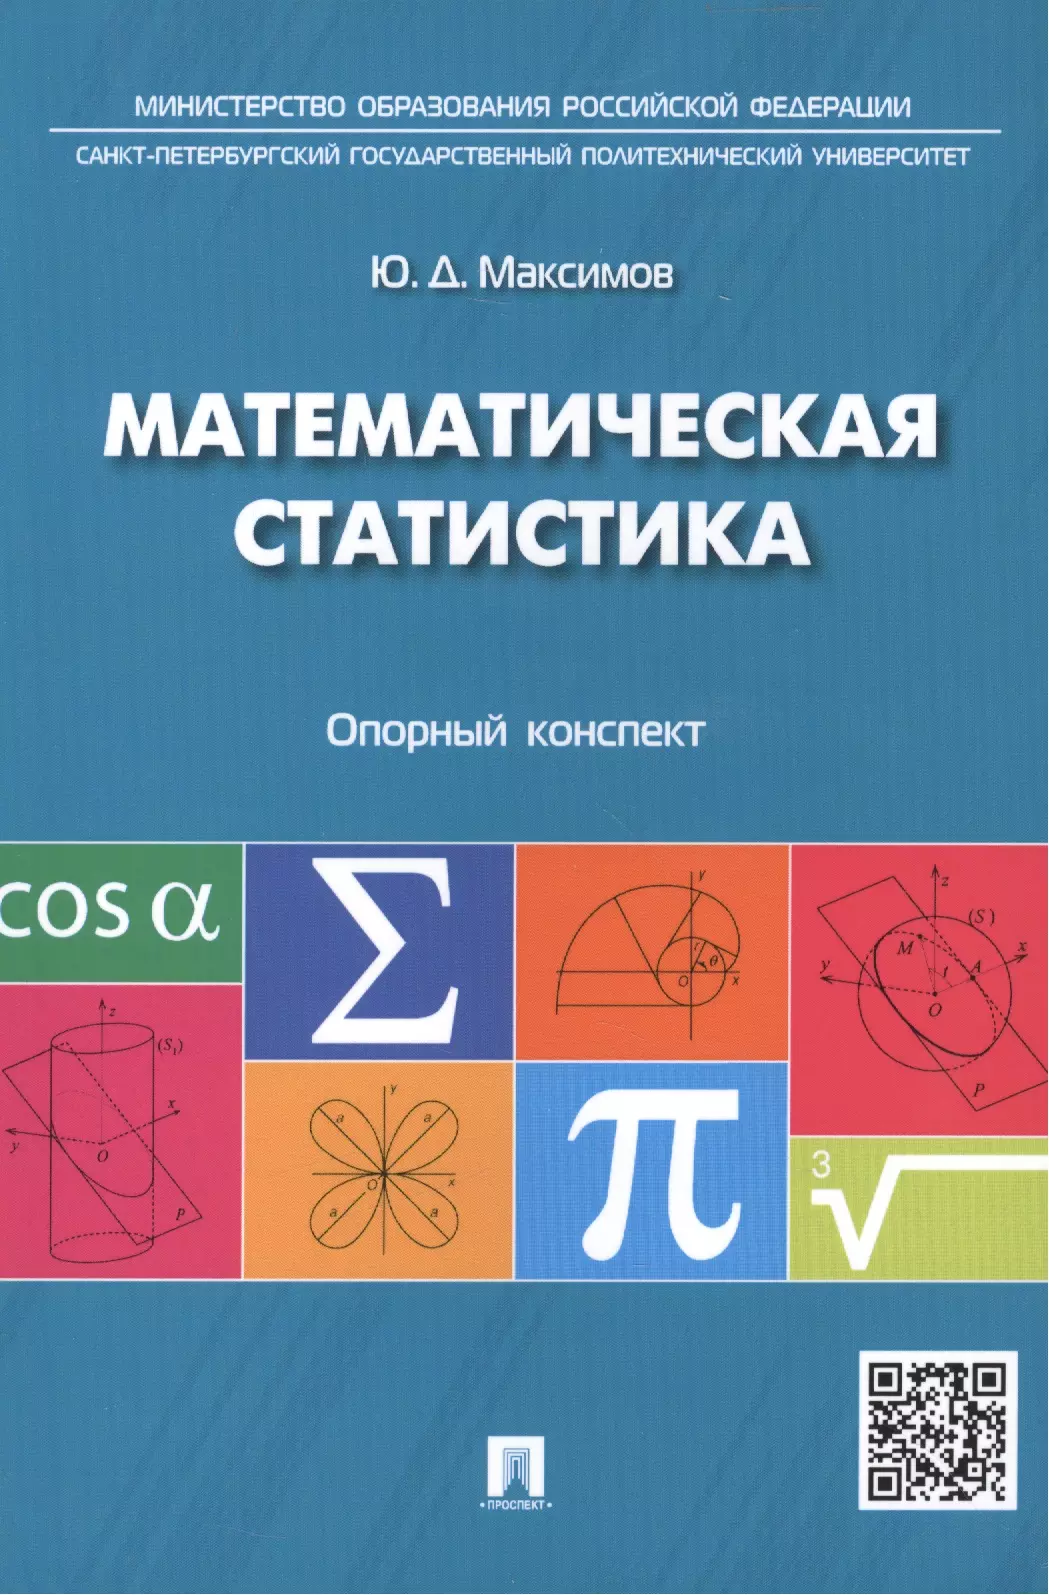 Максимов Юрий Дмитриевич - Математическая статистика: опорный конспект